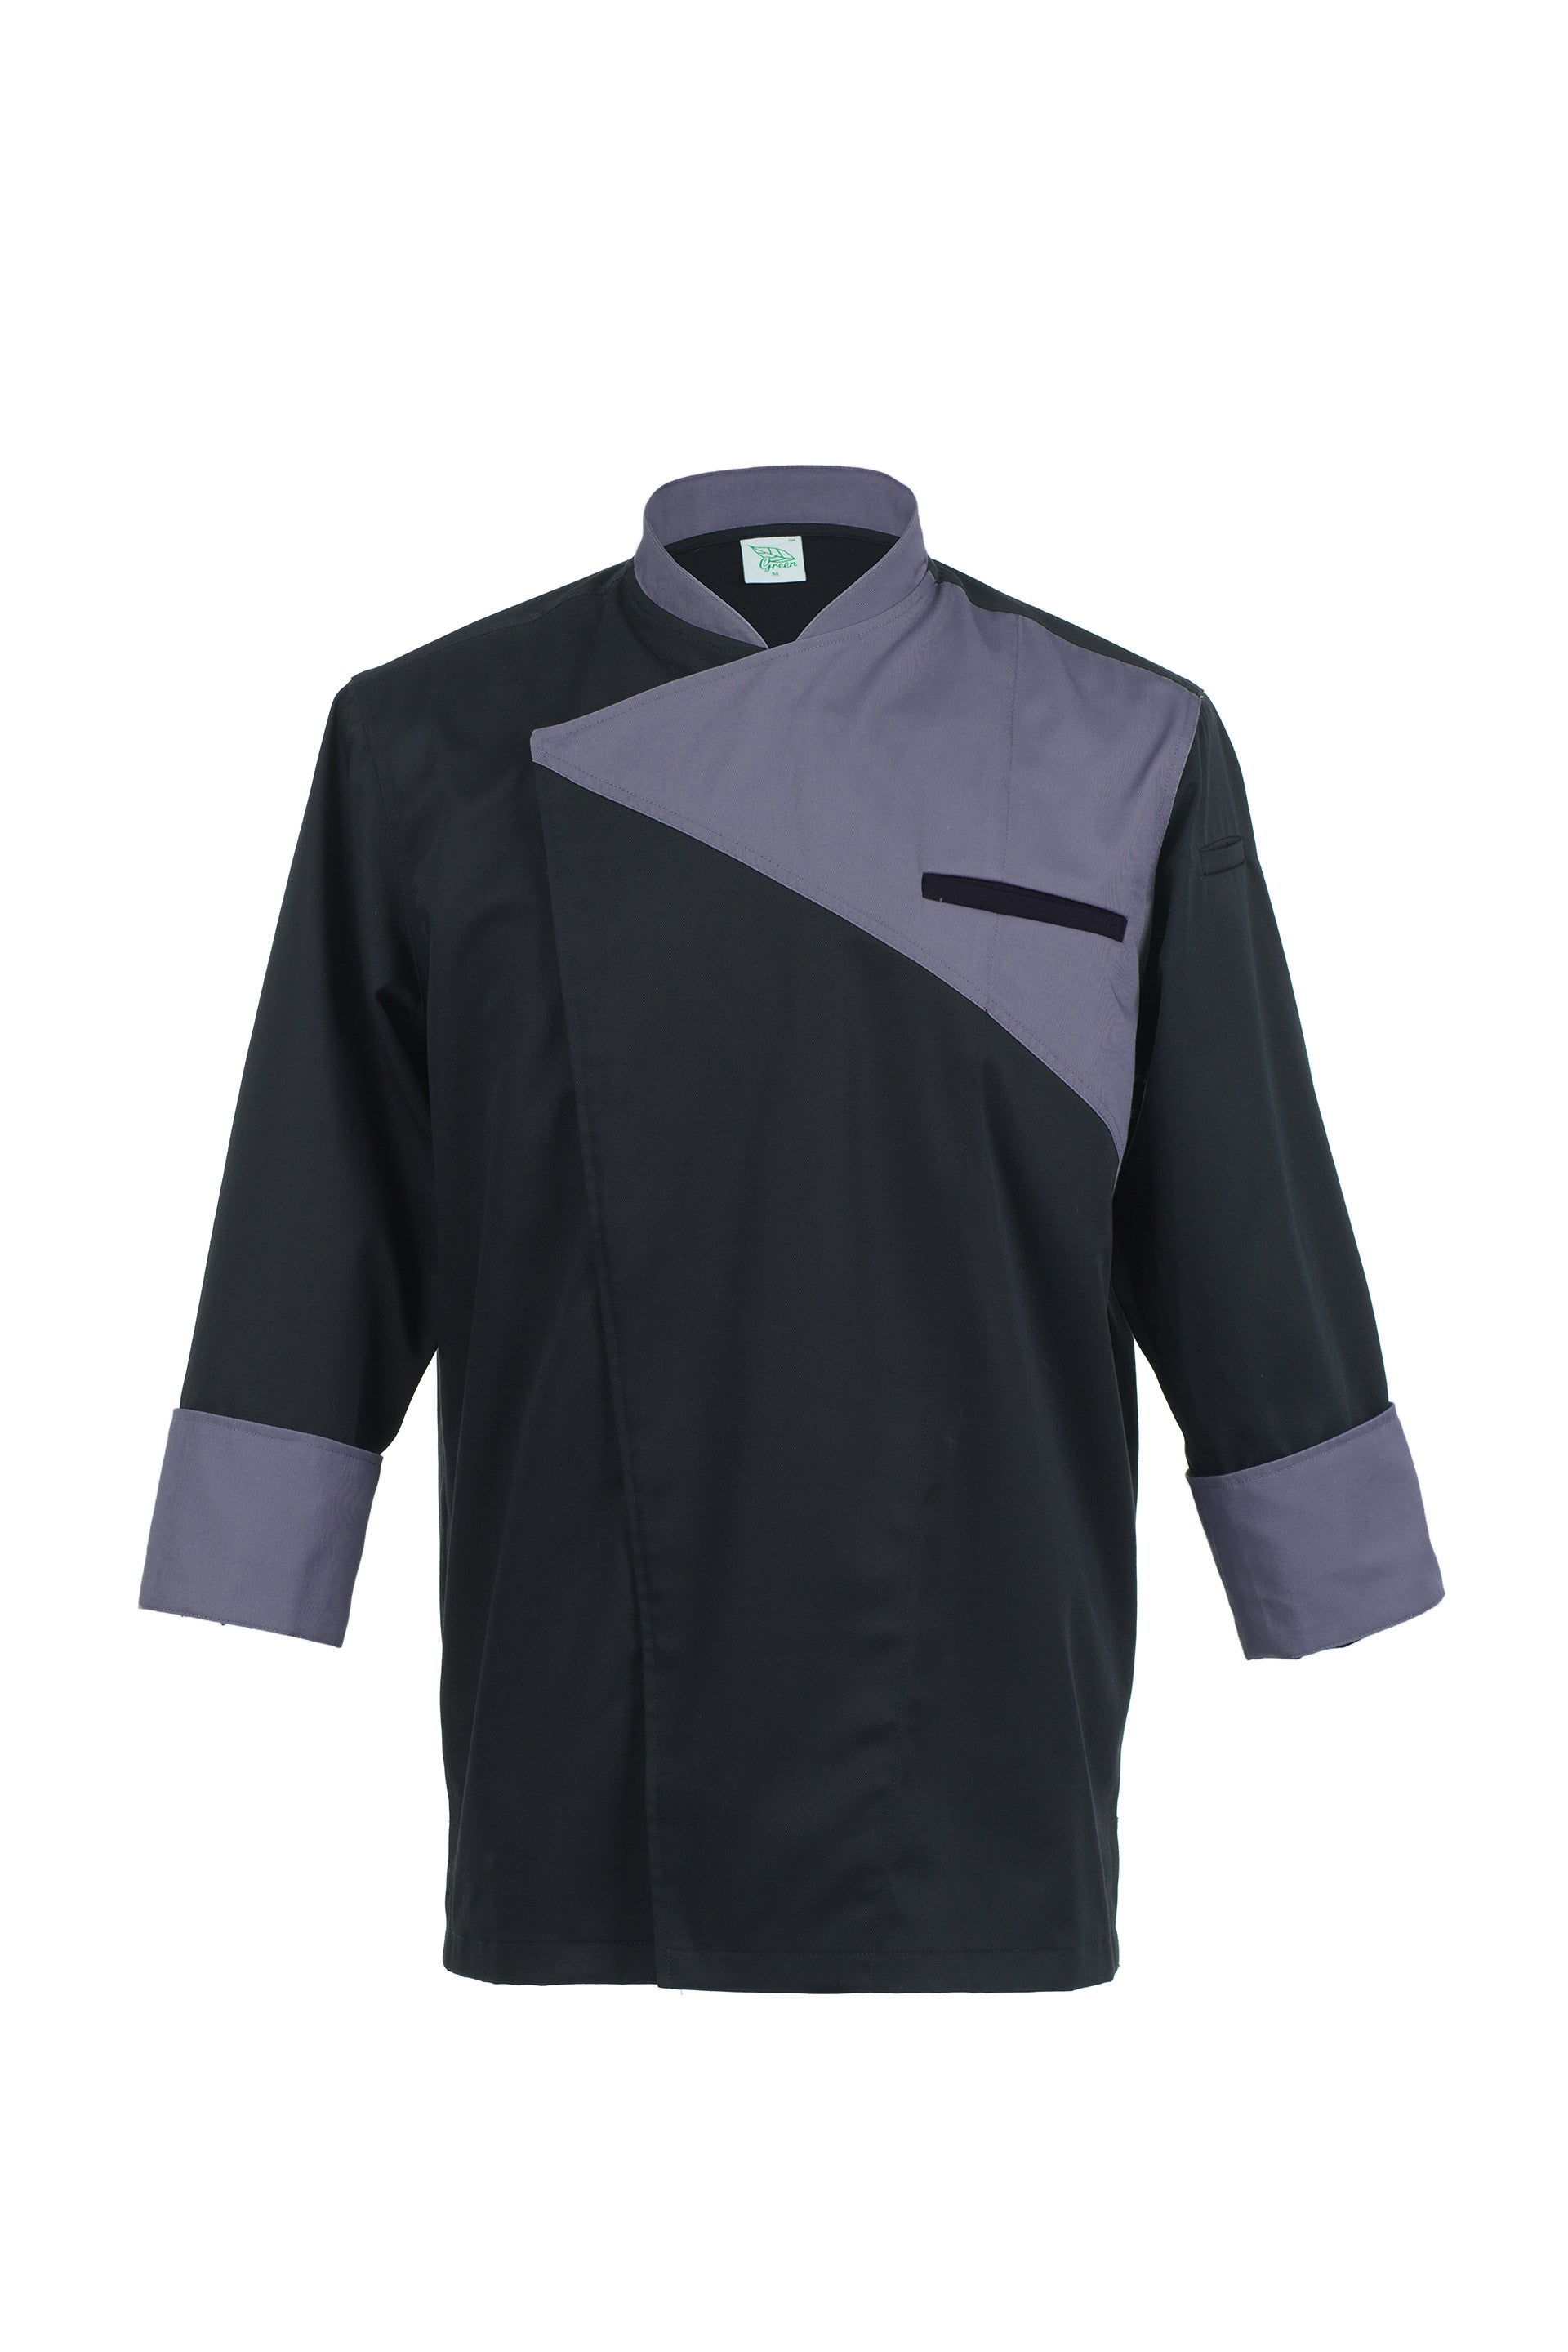 Oregano Black with Grey, Long Sleeve chef jacket